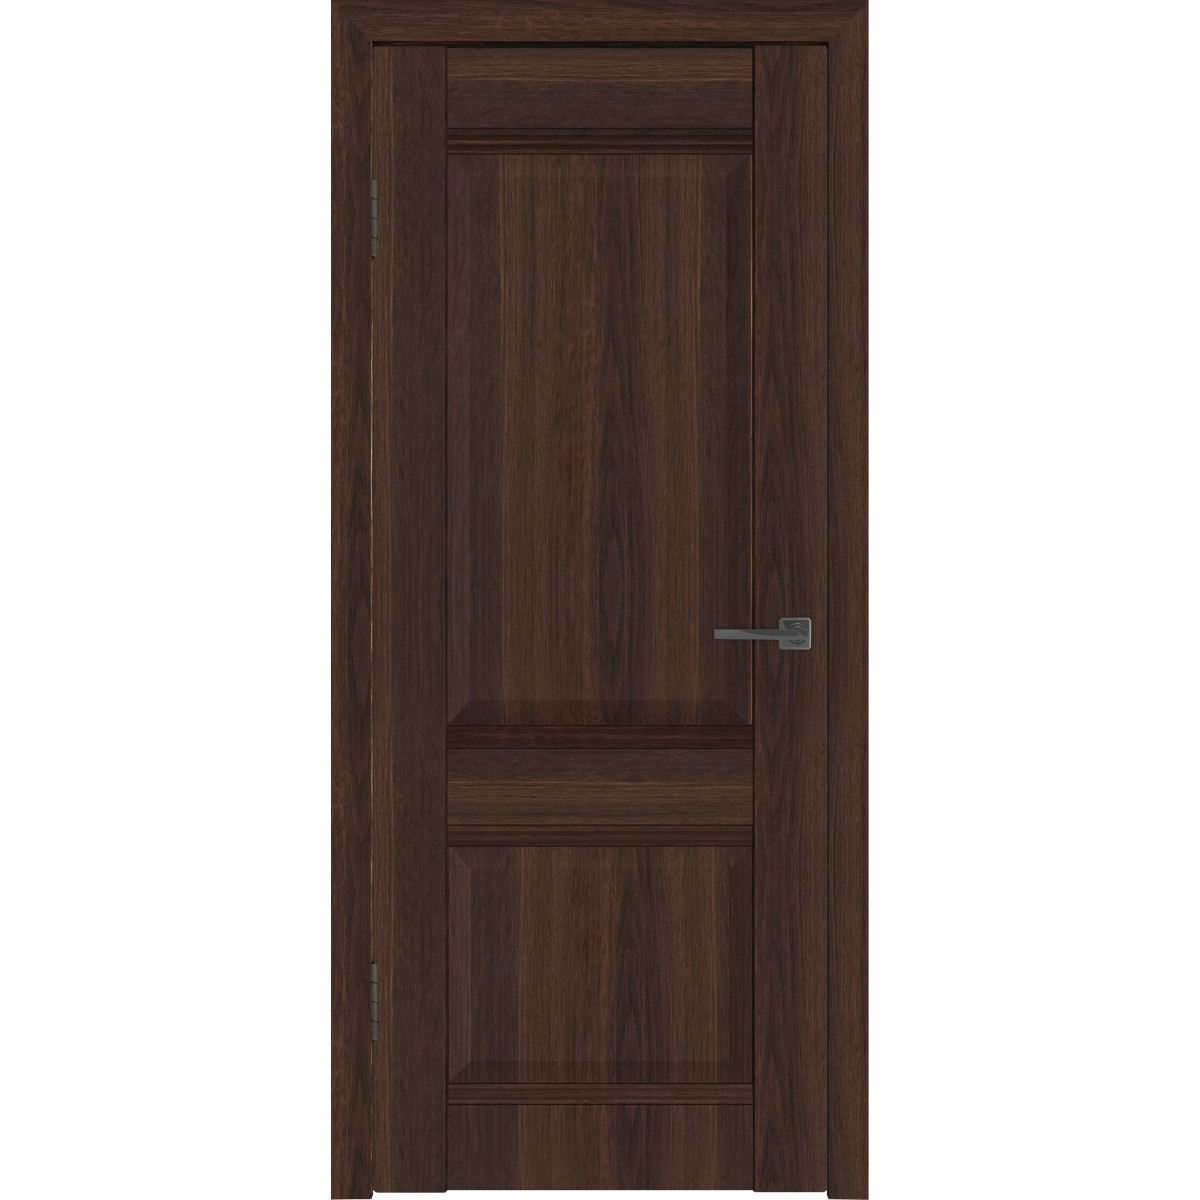 Дверь межкомнатная глухая с замком и петлями в комплекте Классик 2 90x200 см ПВХ цвет каштан